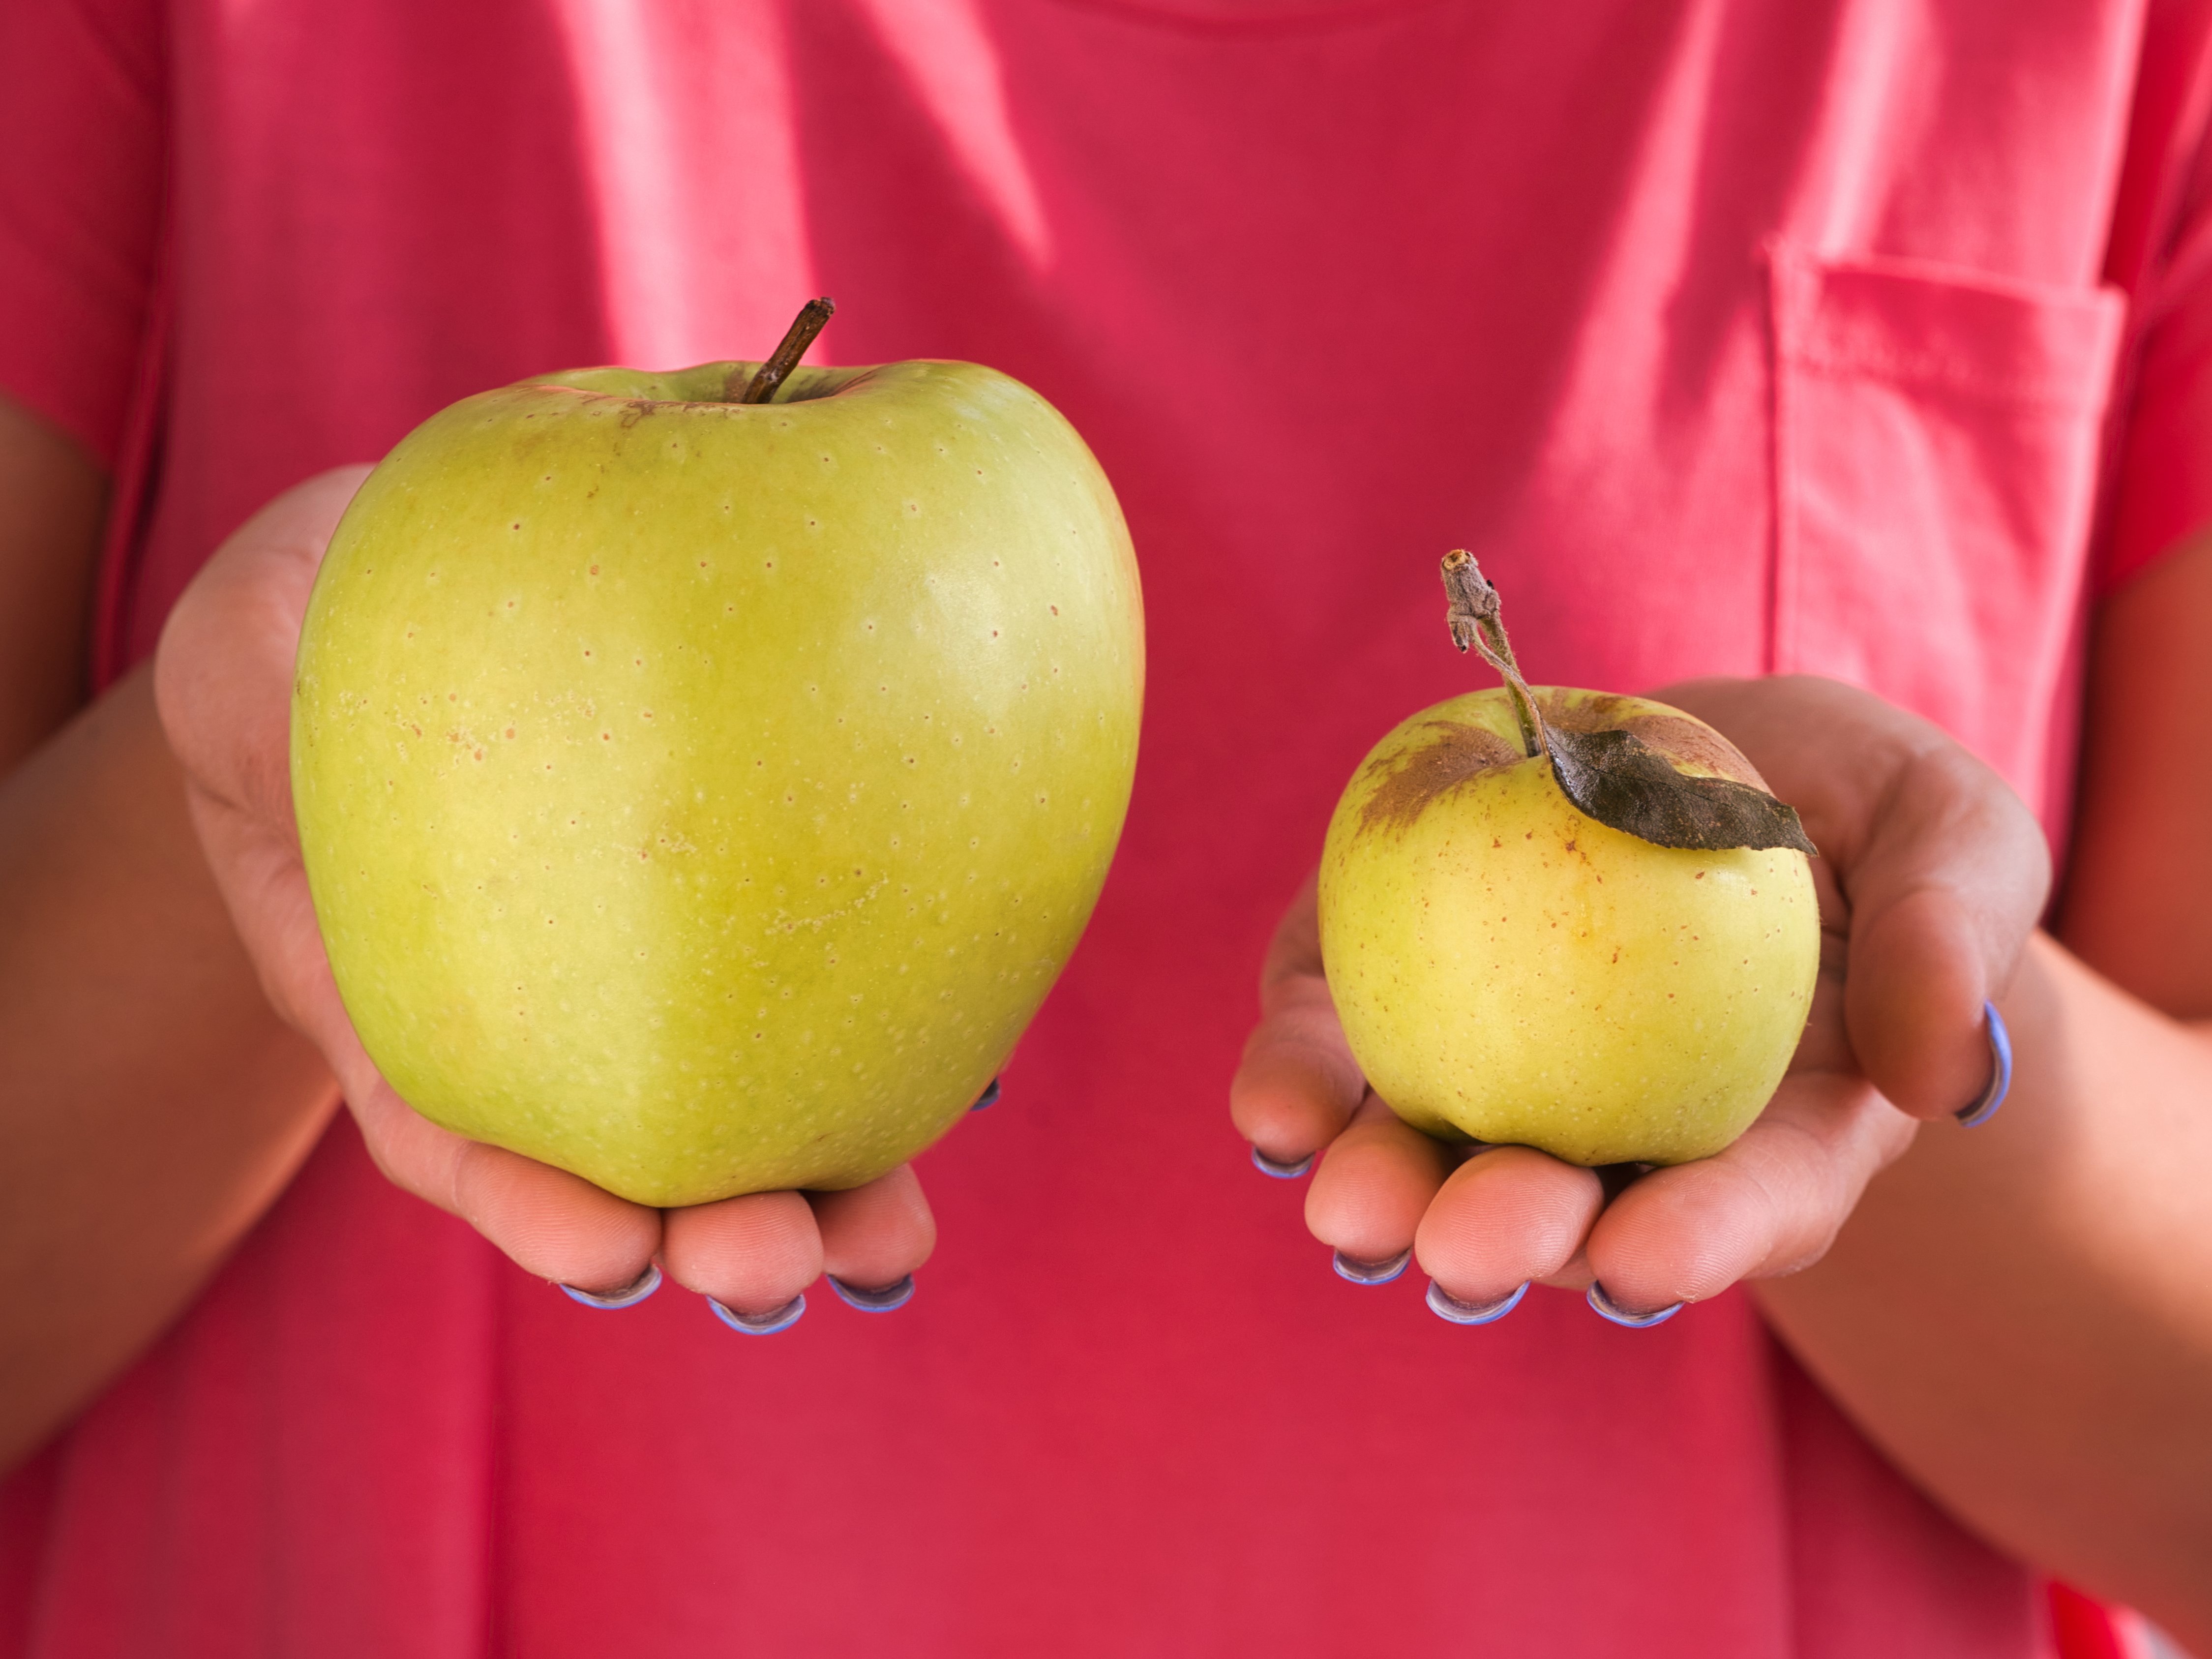 Ein großer und ein kleiner gelber, fauliger Apfel  werden von einer Person im roten T-Shirt gehalten